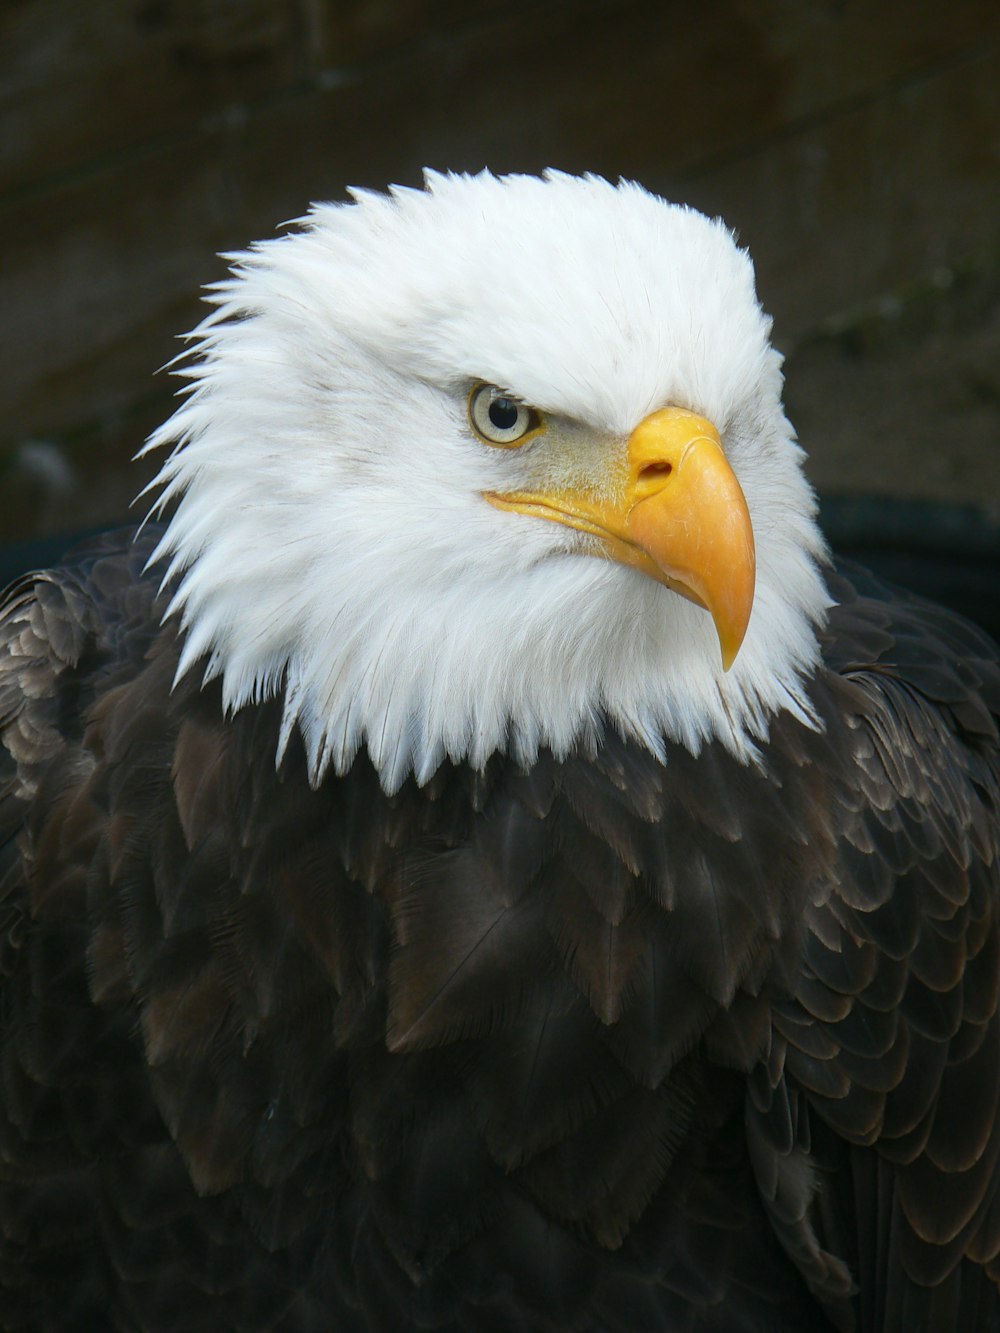 águia preta e branca na fotografia de perto